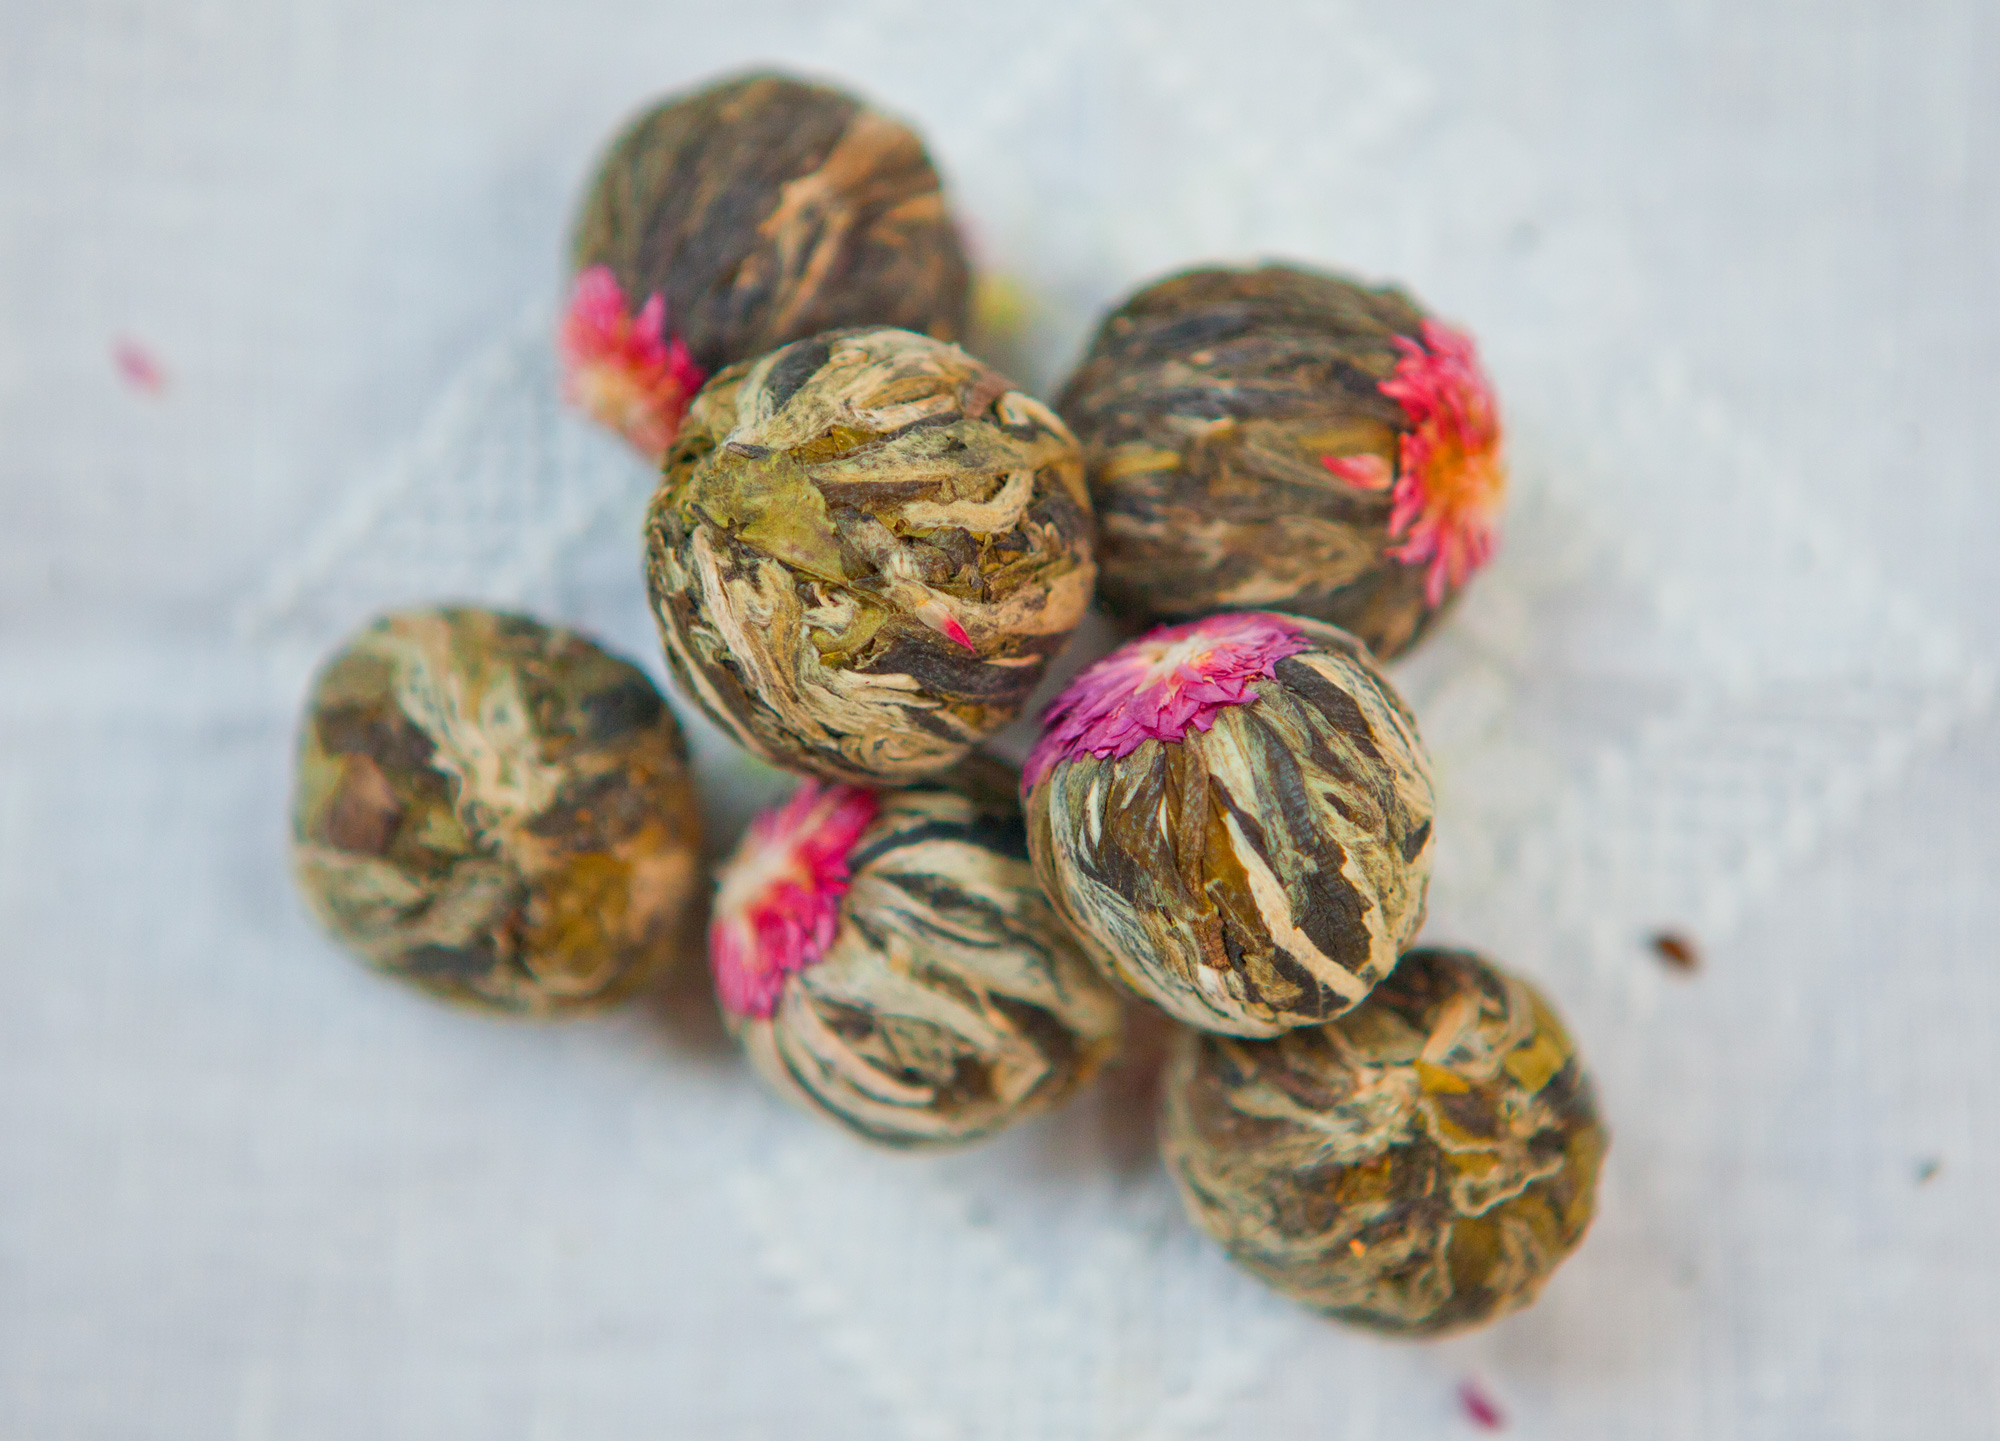 Sprasowane kwiaty, które można zaparzać, w smaku przypominają zieloną herbatę. Fot. Newsbar.pl